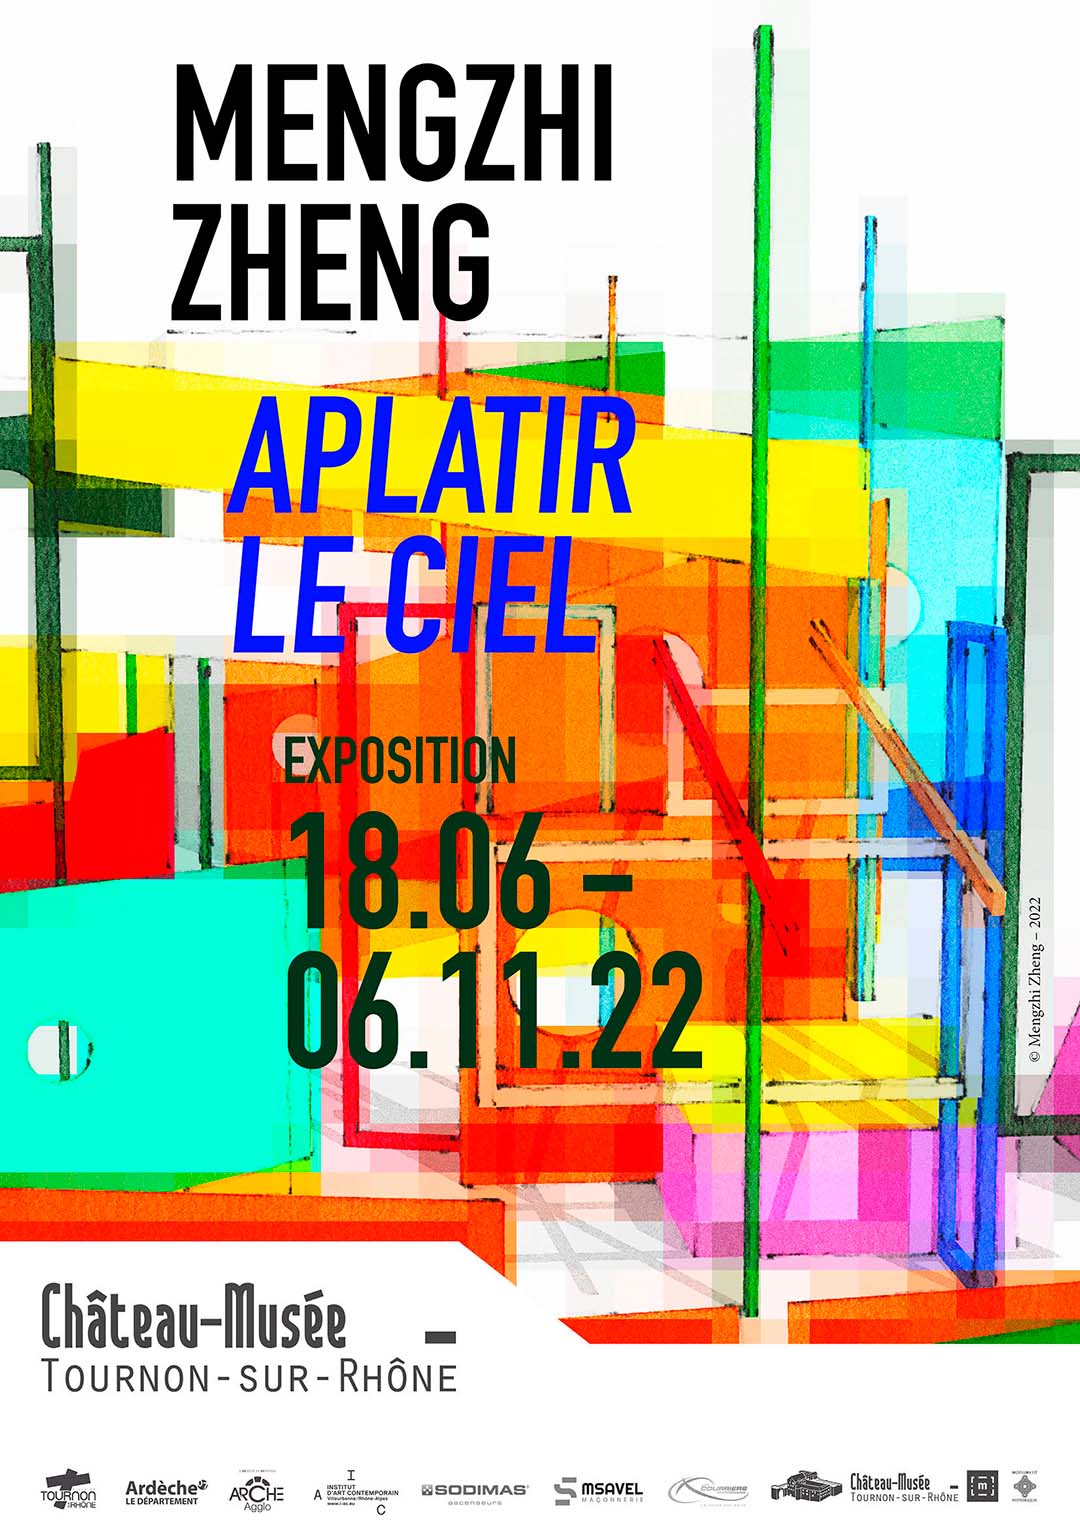 MENGZHI ZHENG. Aplatir le ciel. Exposition du 18 juin au 6 novembre 2022 au Château-musée.